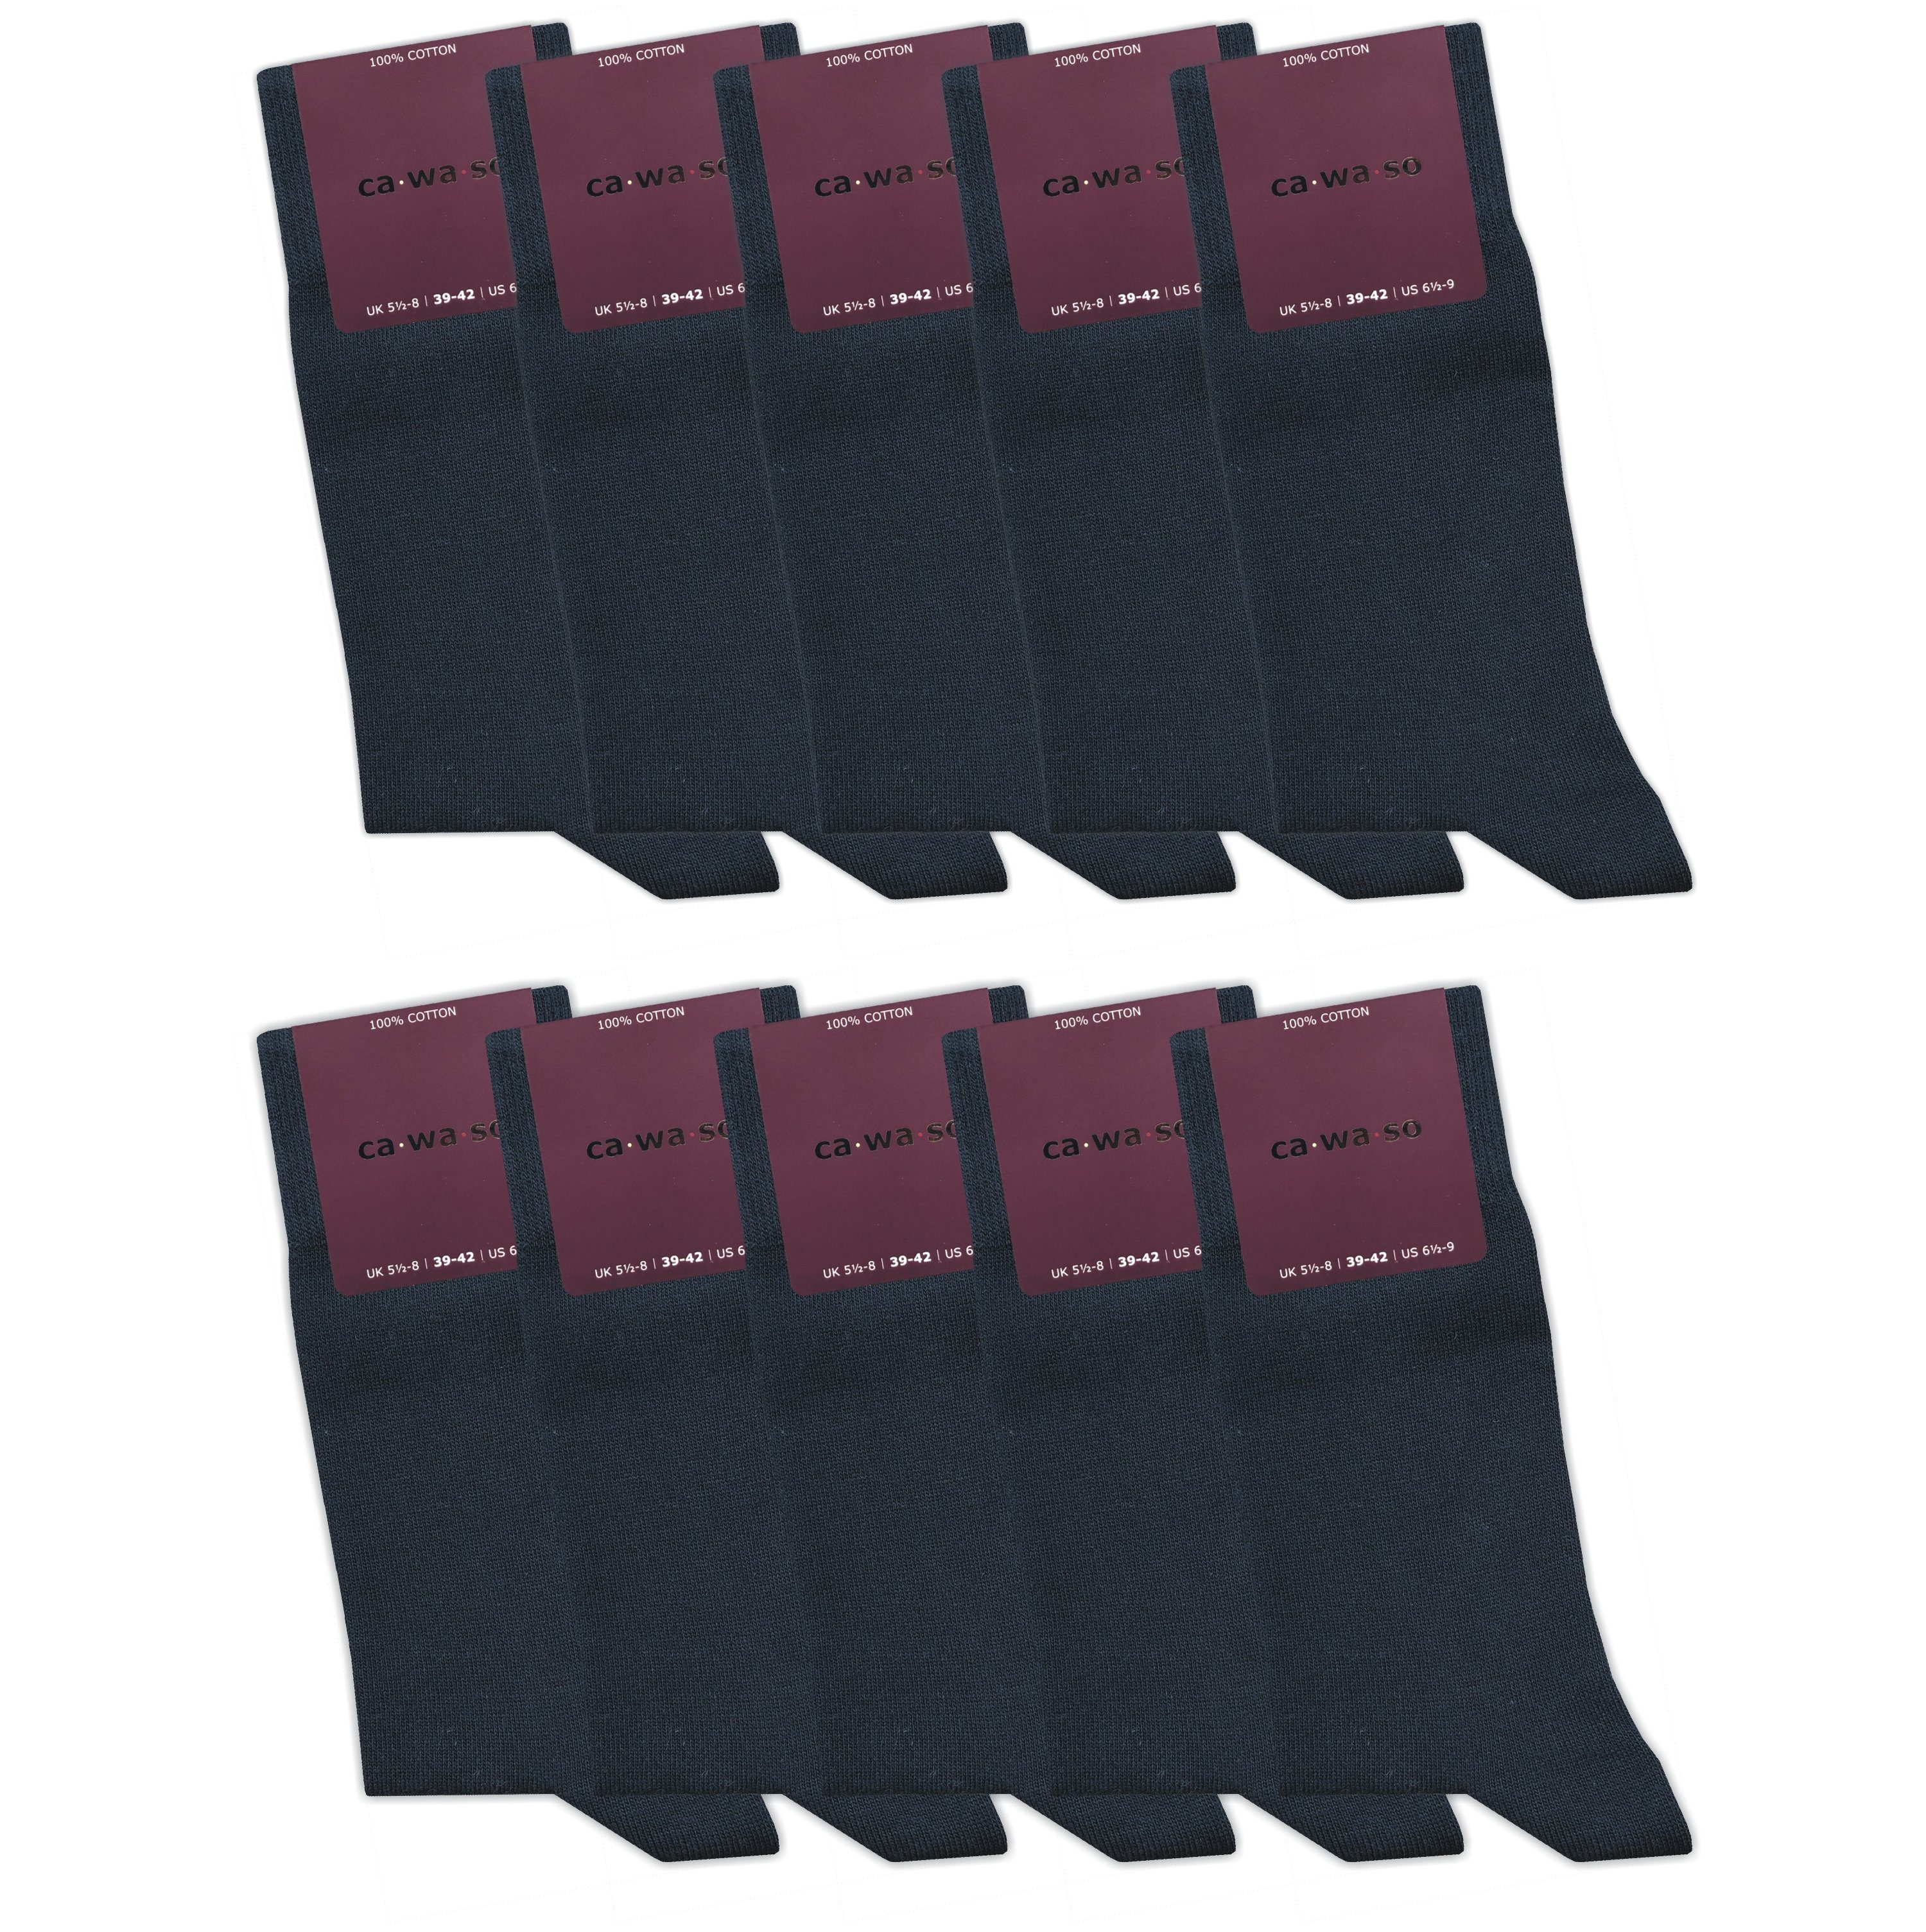 blau Haltbarkeit Weiche - Baumwolle lange gekämmte aus Damen Garn 100 - Reine Baumwollsocken Sneakersocken (10 Paar) Socken für % Baumwolle verstricktes & Doppelt für ca·wa·so